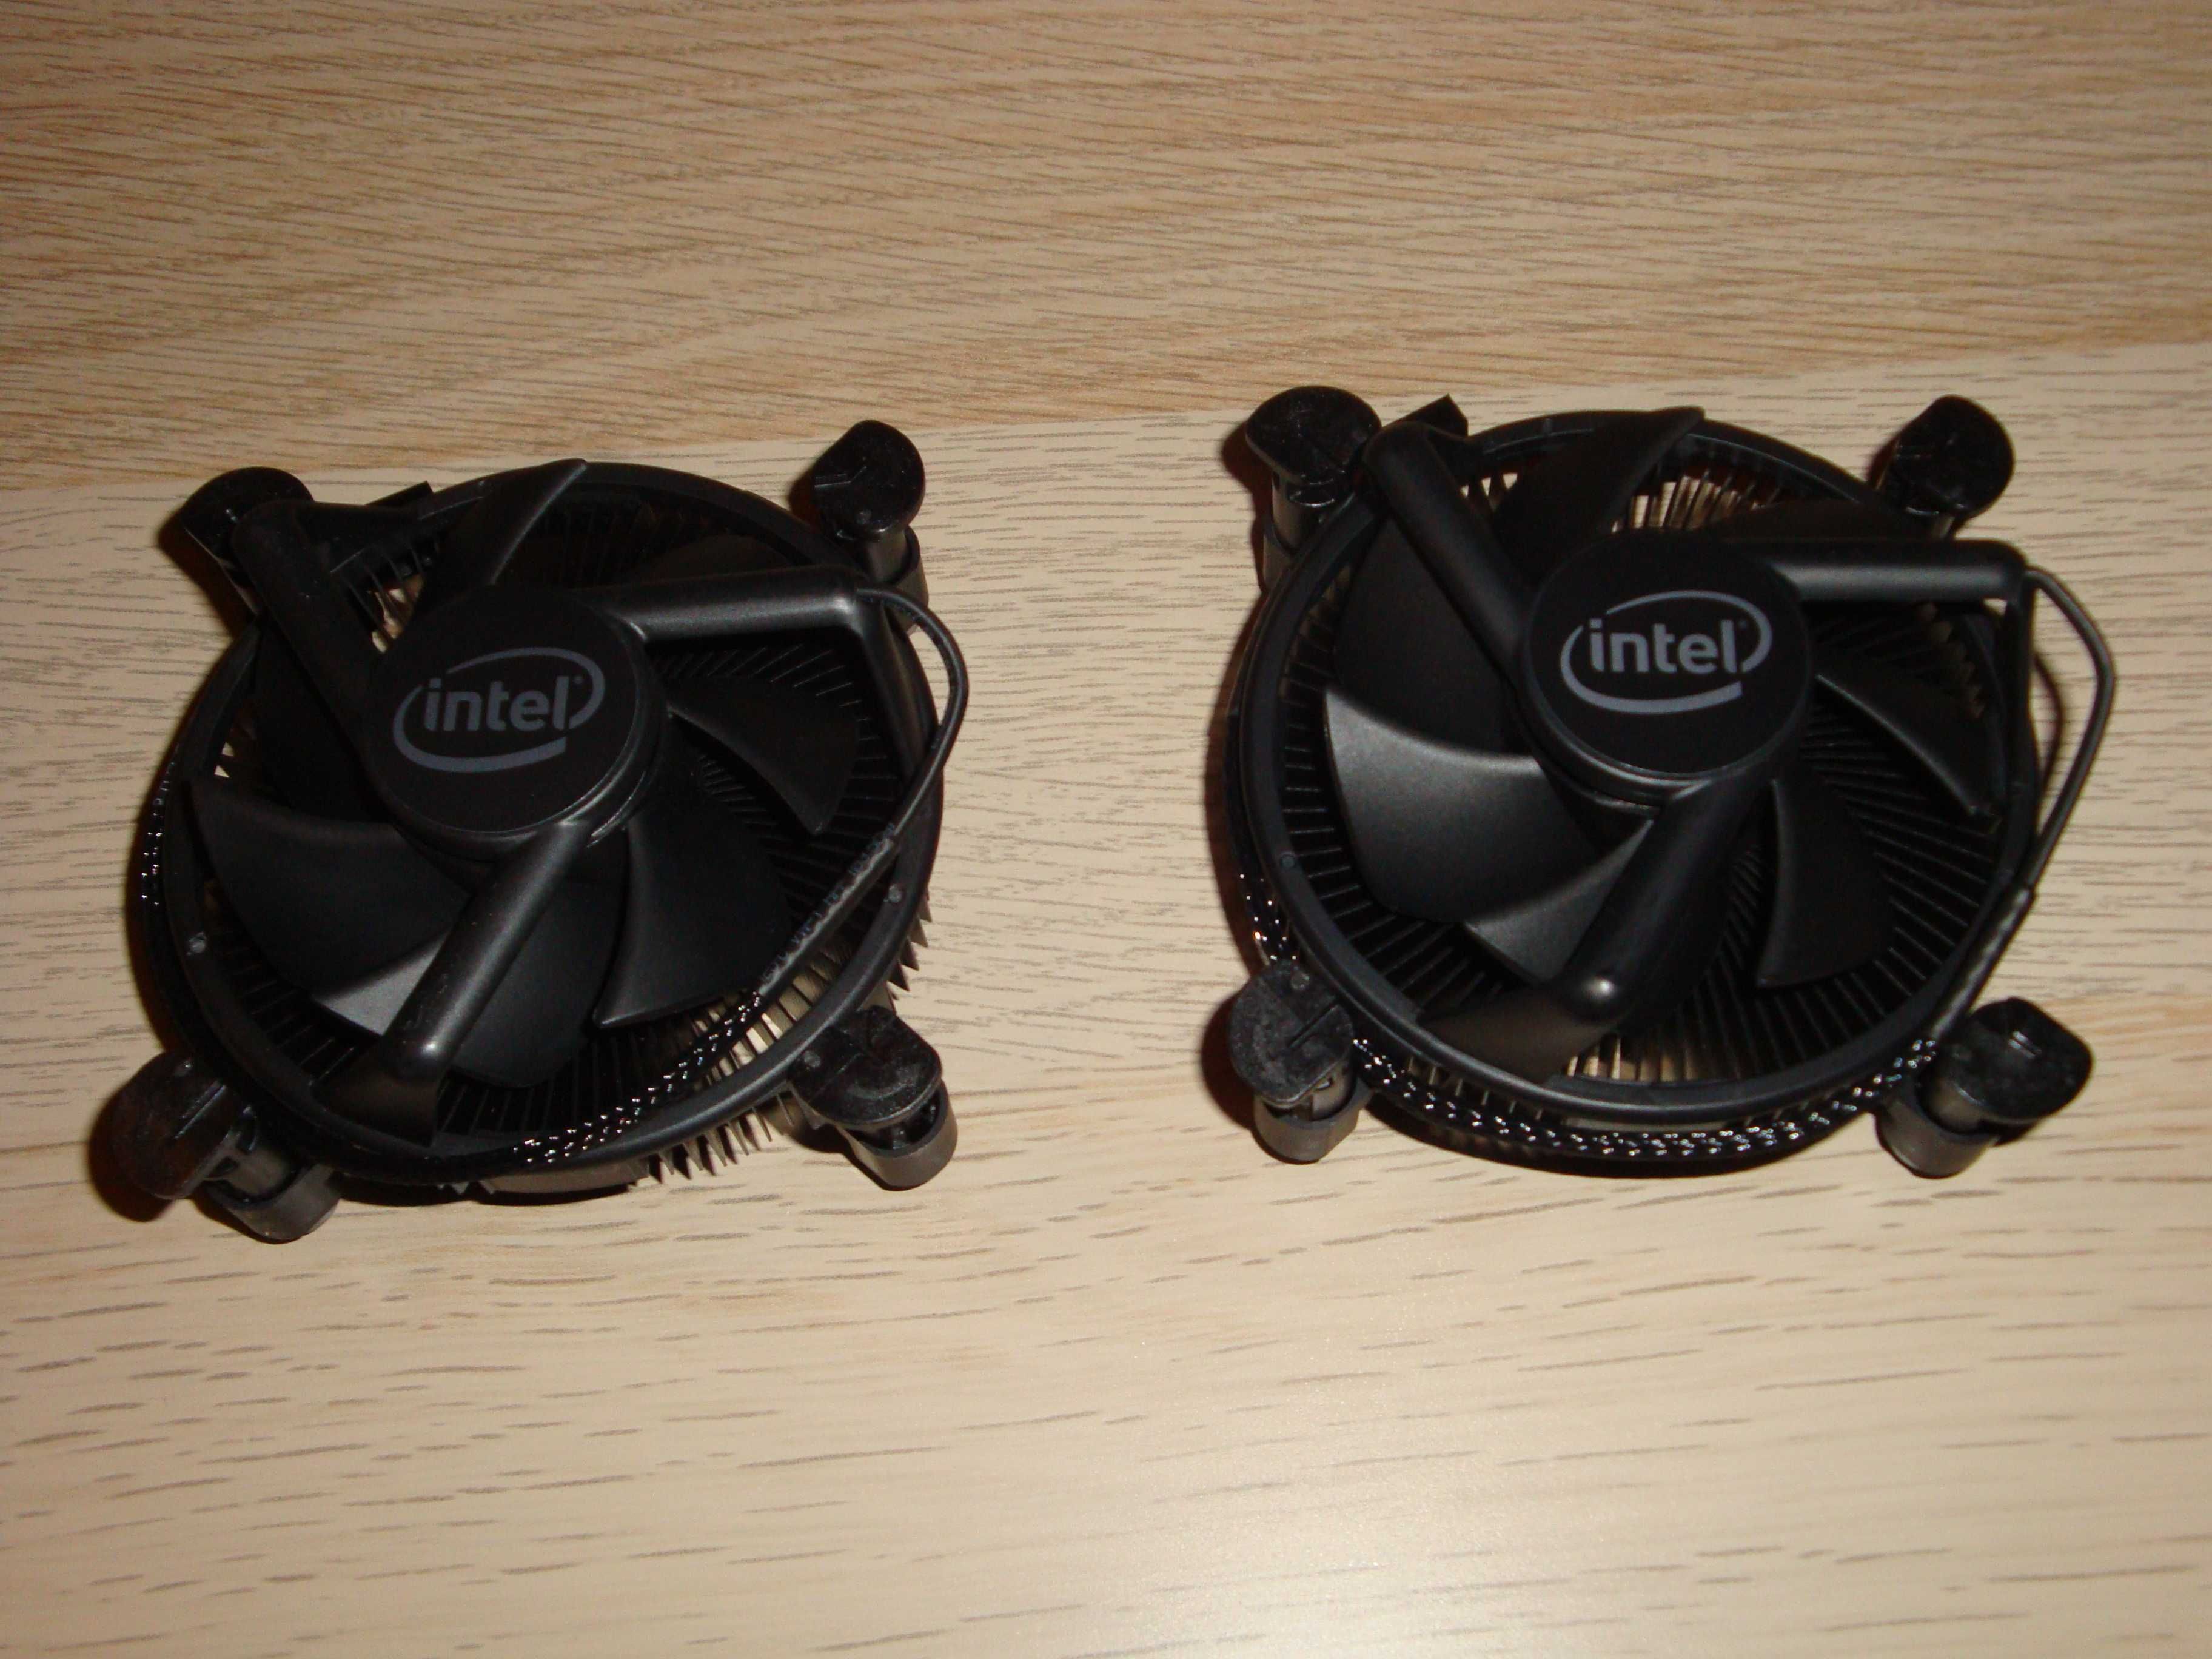 Cooler procesor Intel CPU 10th LGA1200 LGA1151/1150/1155/1156 NOU